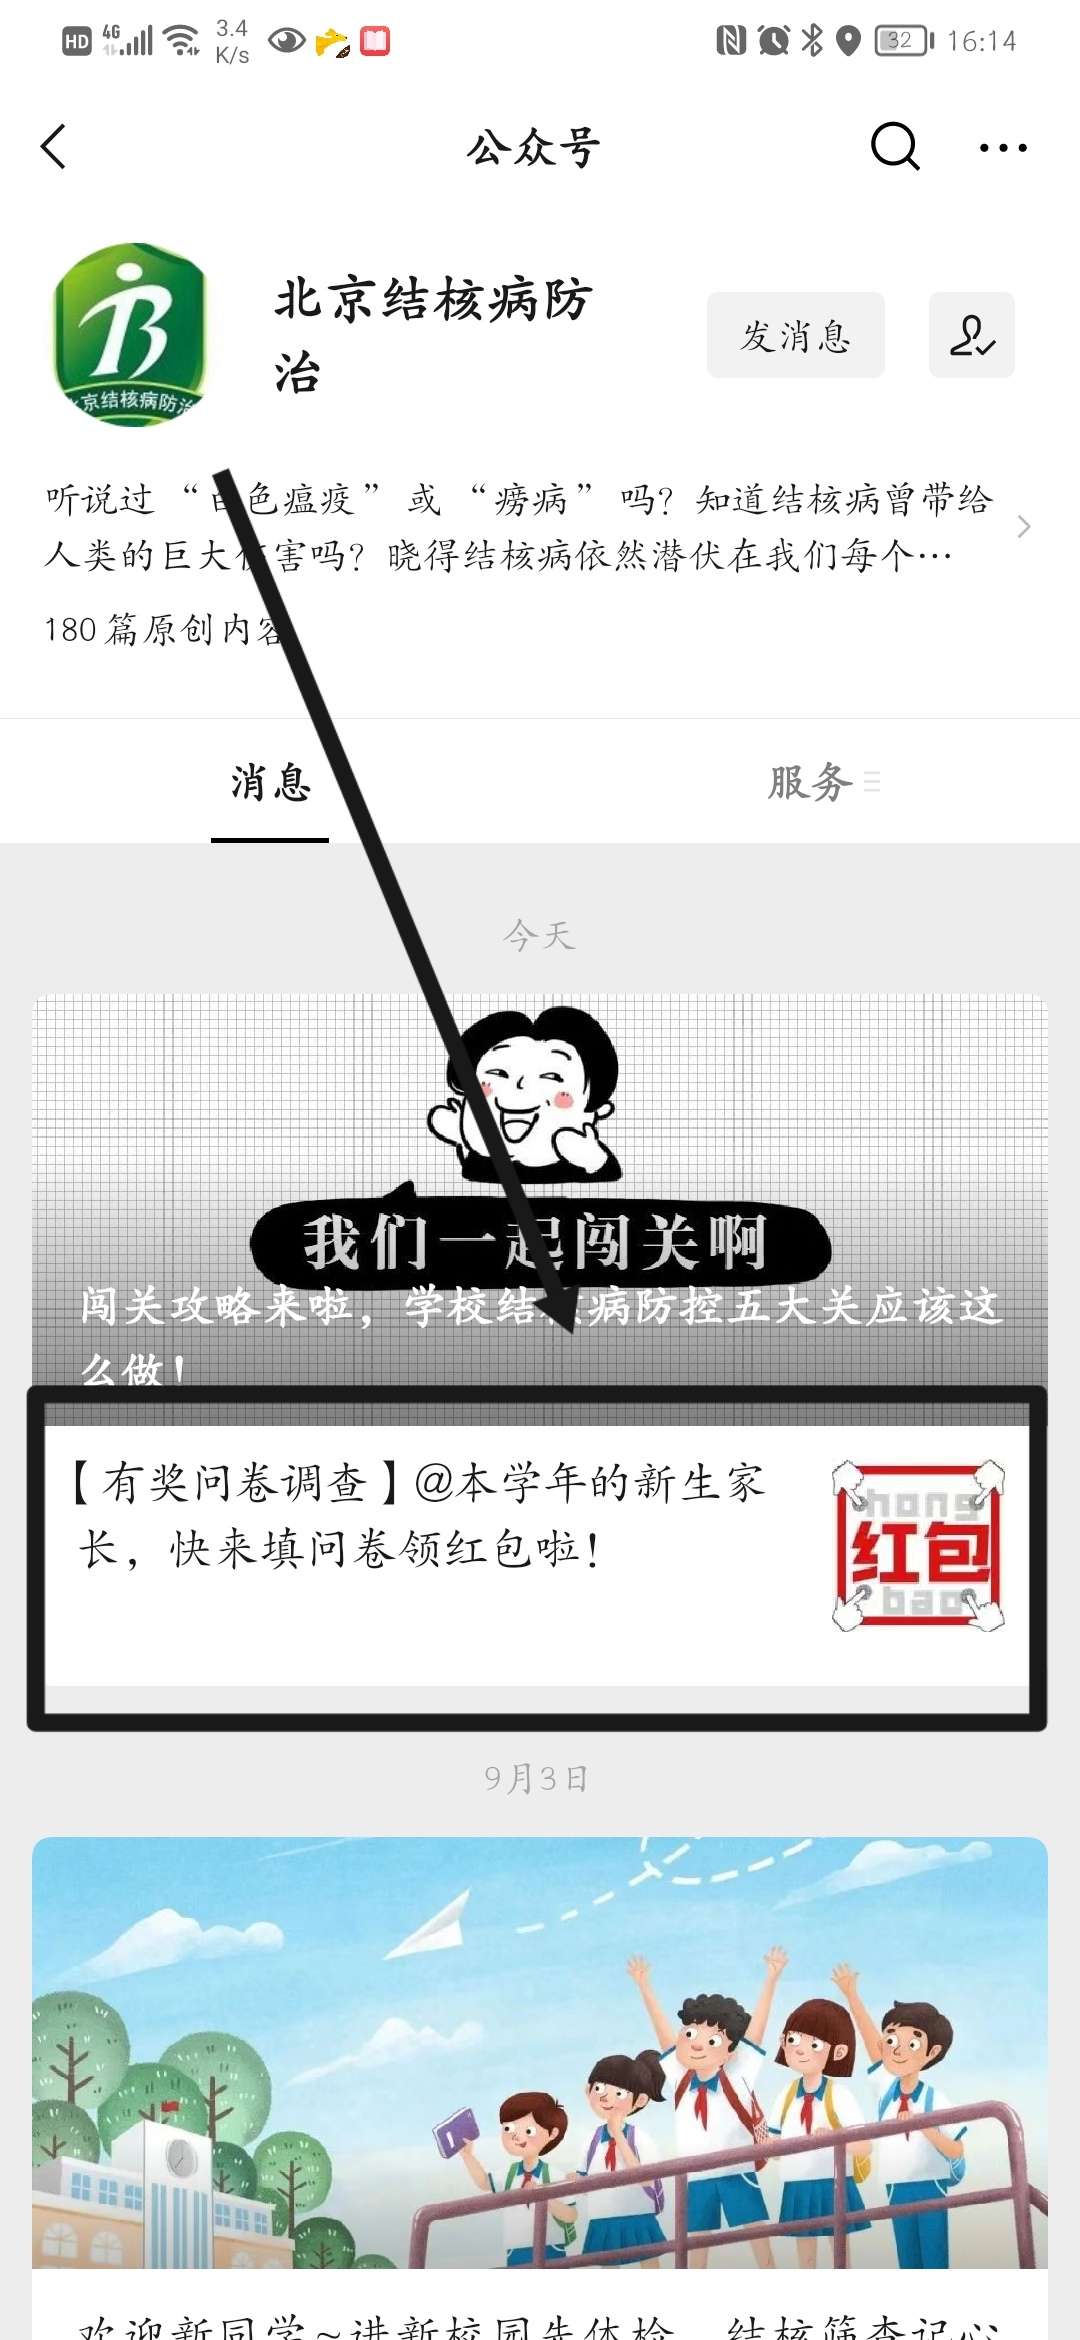 【红包】北京市肺结核预防抽红包插图